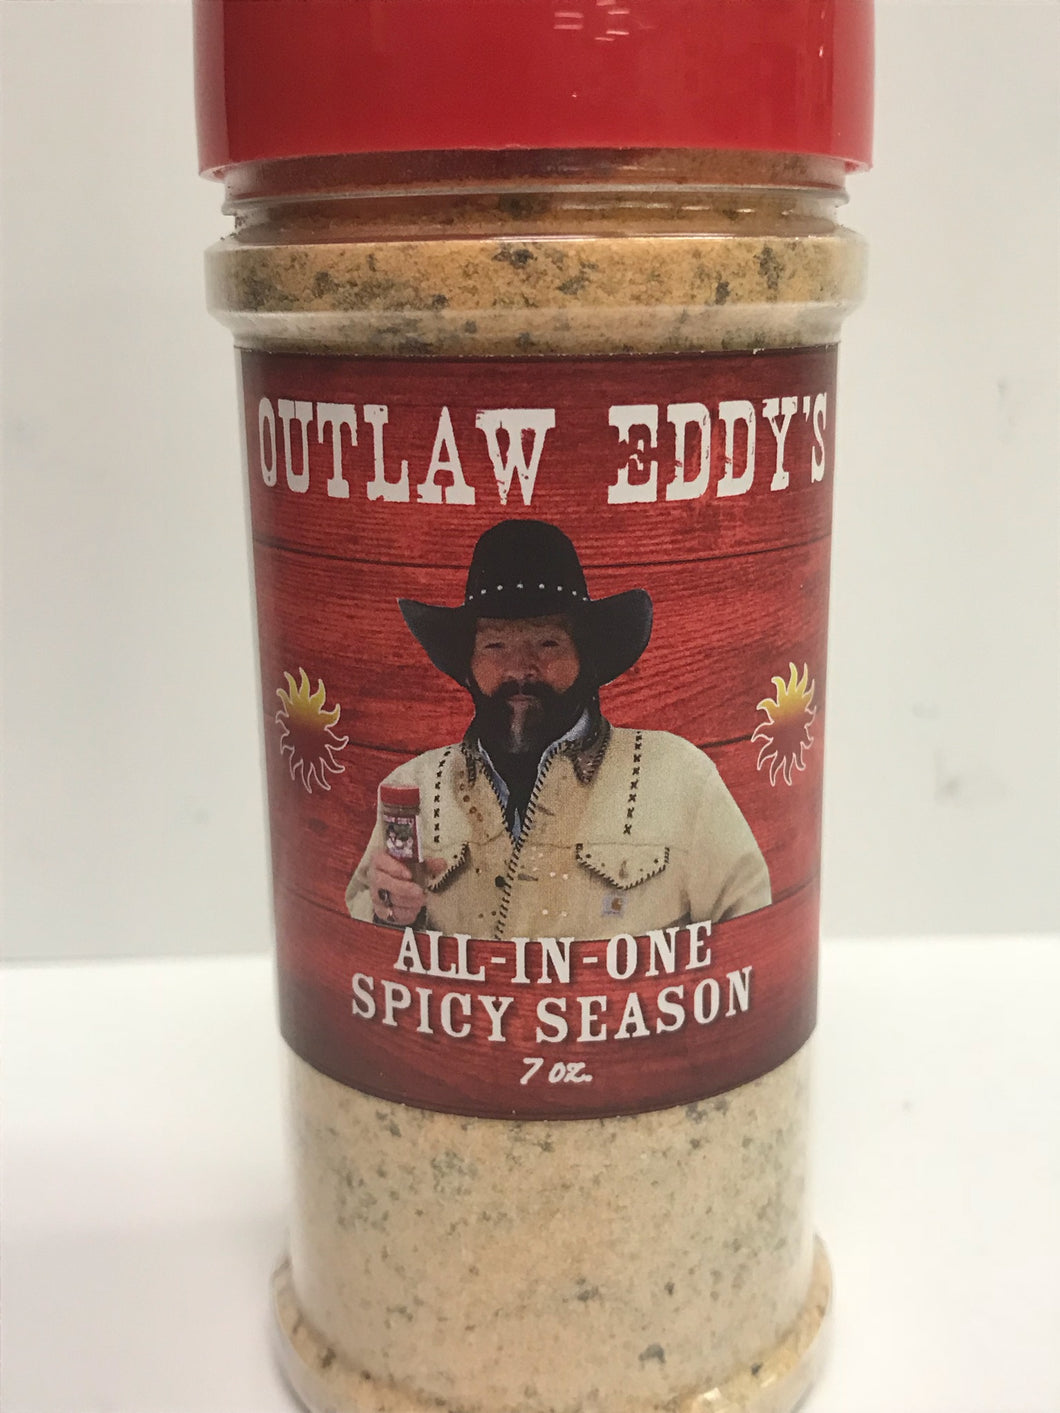 https://prairiecreekprideofdakota.com/cdn/shop/products/Outlaw_Eddy_s_All_In_One_Spicy_seasoning_530x@2x.jpg?v=1543865976